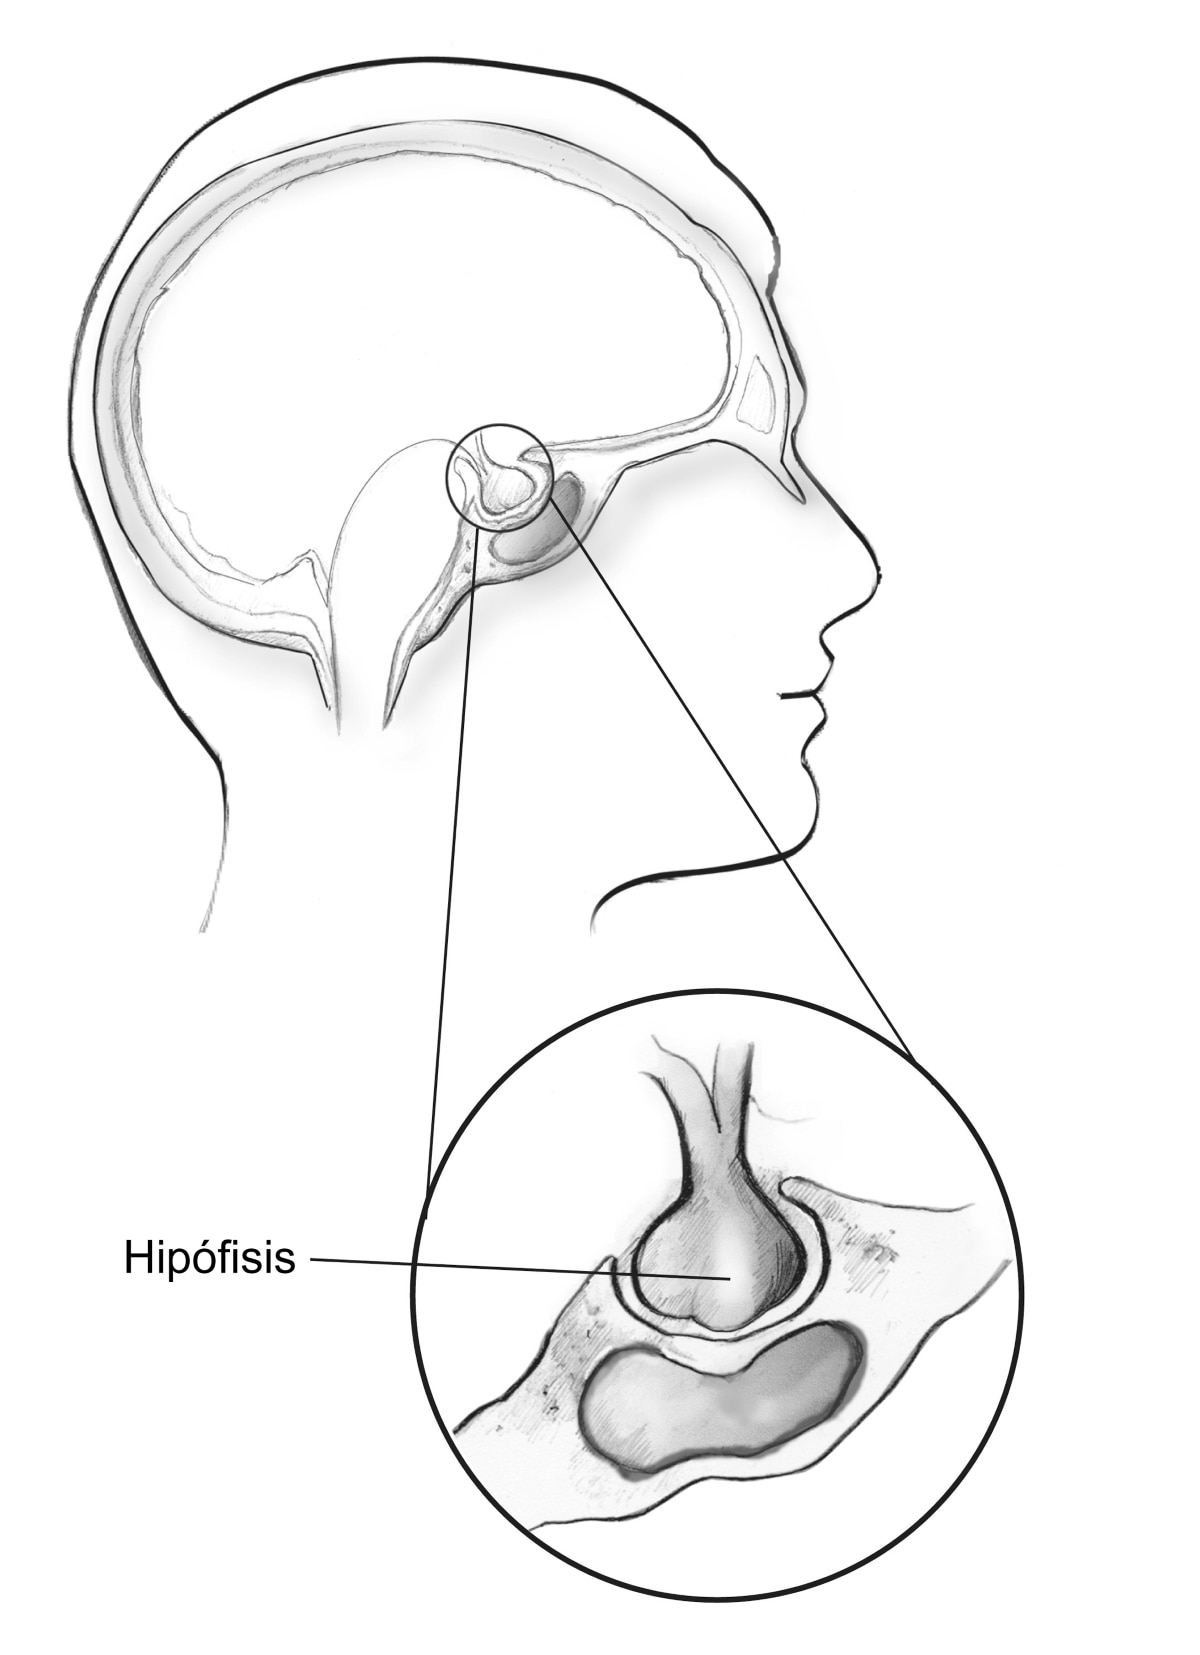 Contorno de una cabeza humana que muestra la ubicación de la hipófisis justo debajo del cerebro